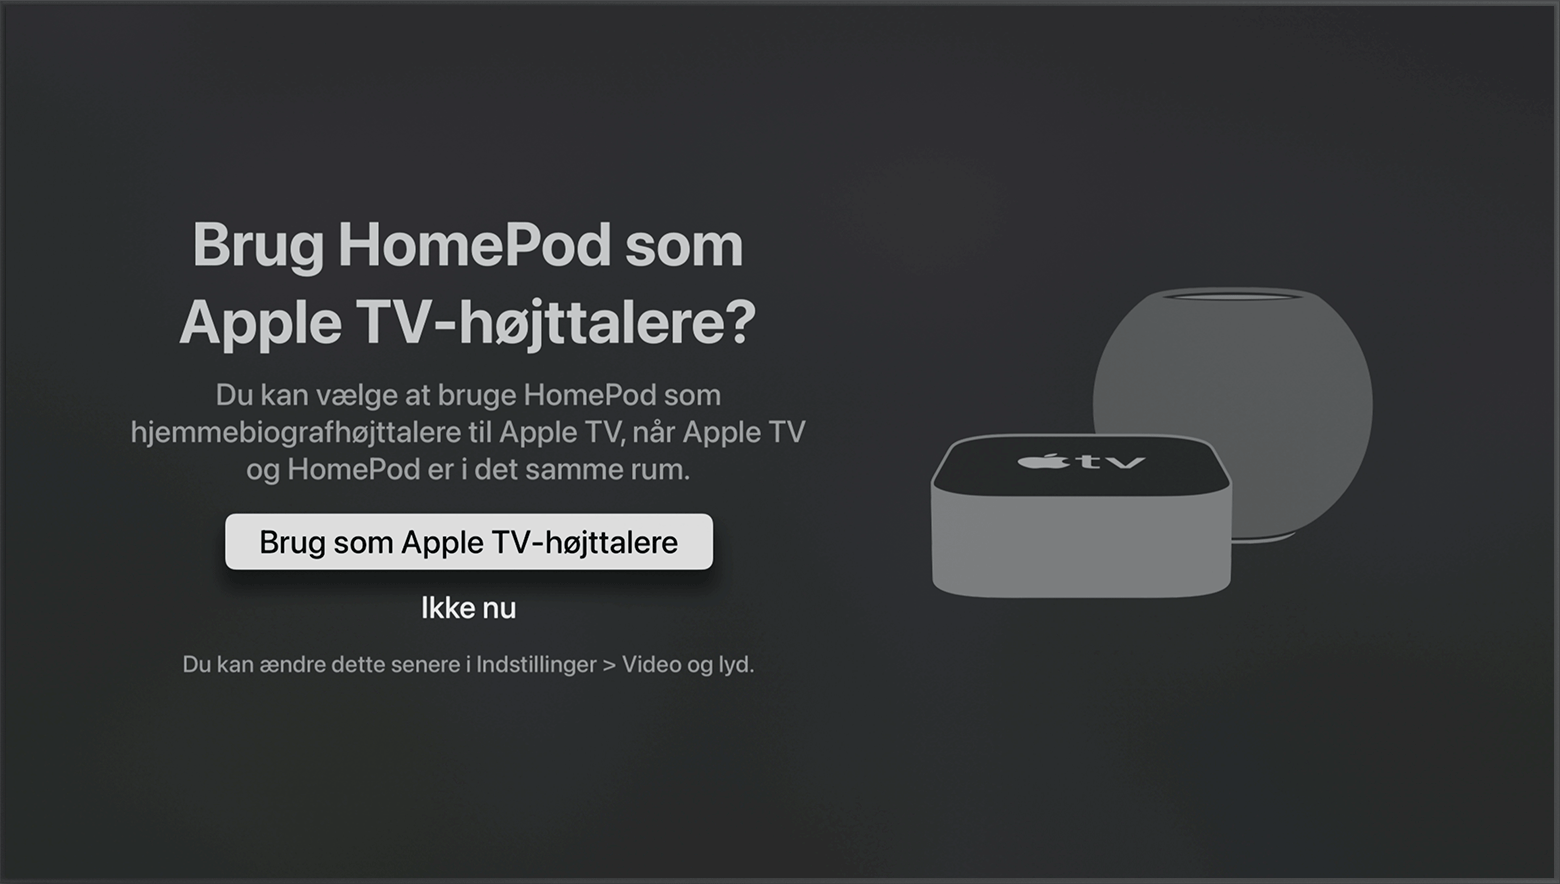 tvOS-skærm, hvor der spørges, om HomePod-højttalere skal bruges som Apple TV-højttalere.